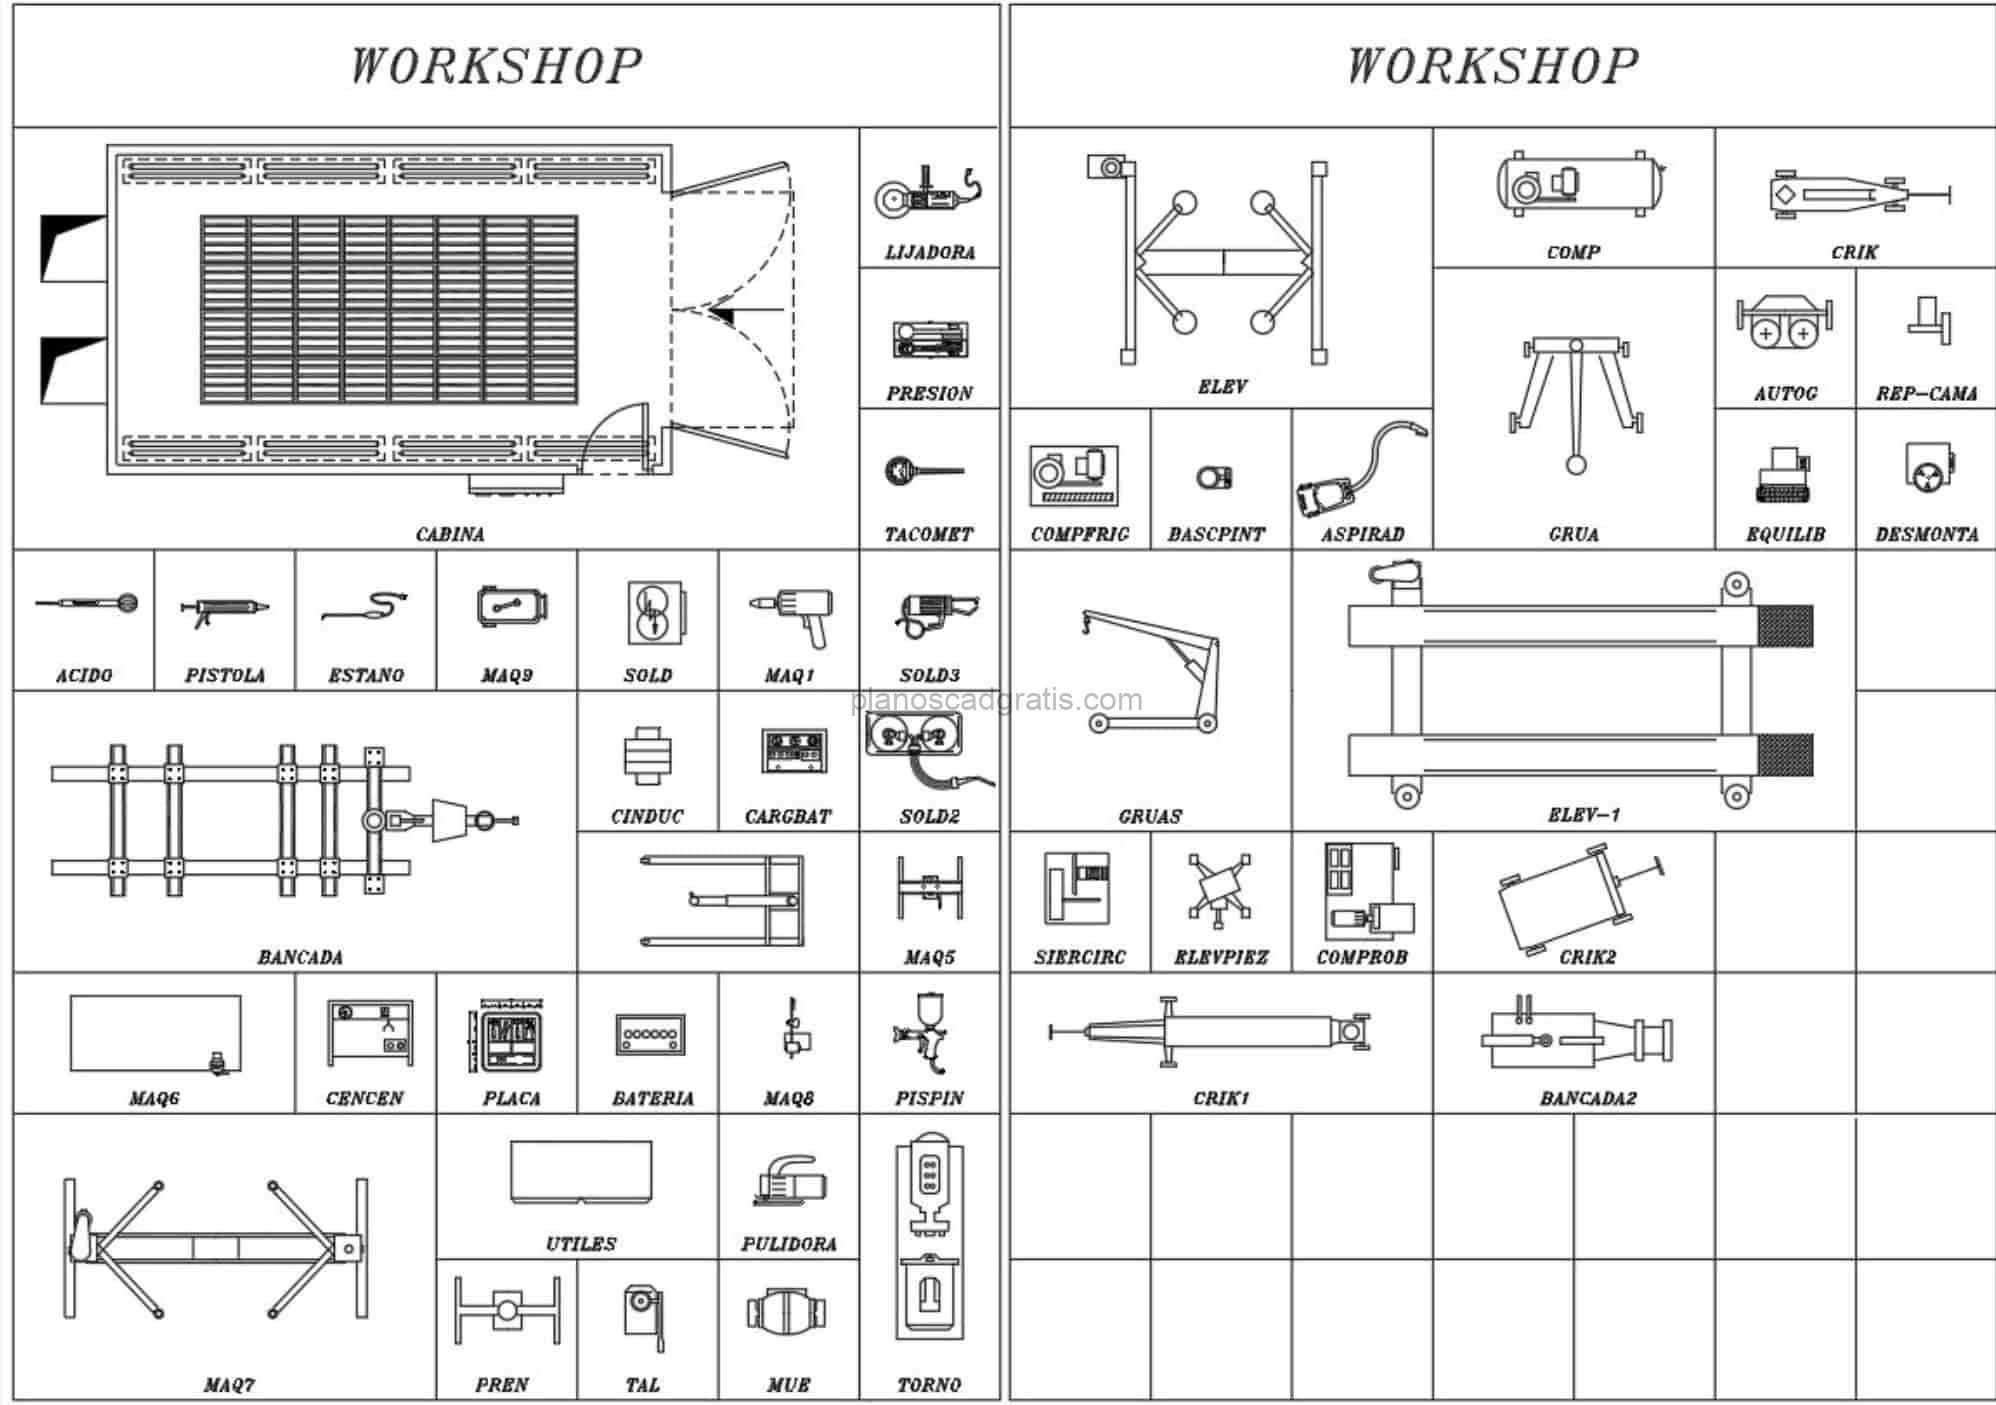 bloques de autocad dibujo formato dwg de herramientas de taller y maquinarias para descarga gratis